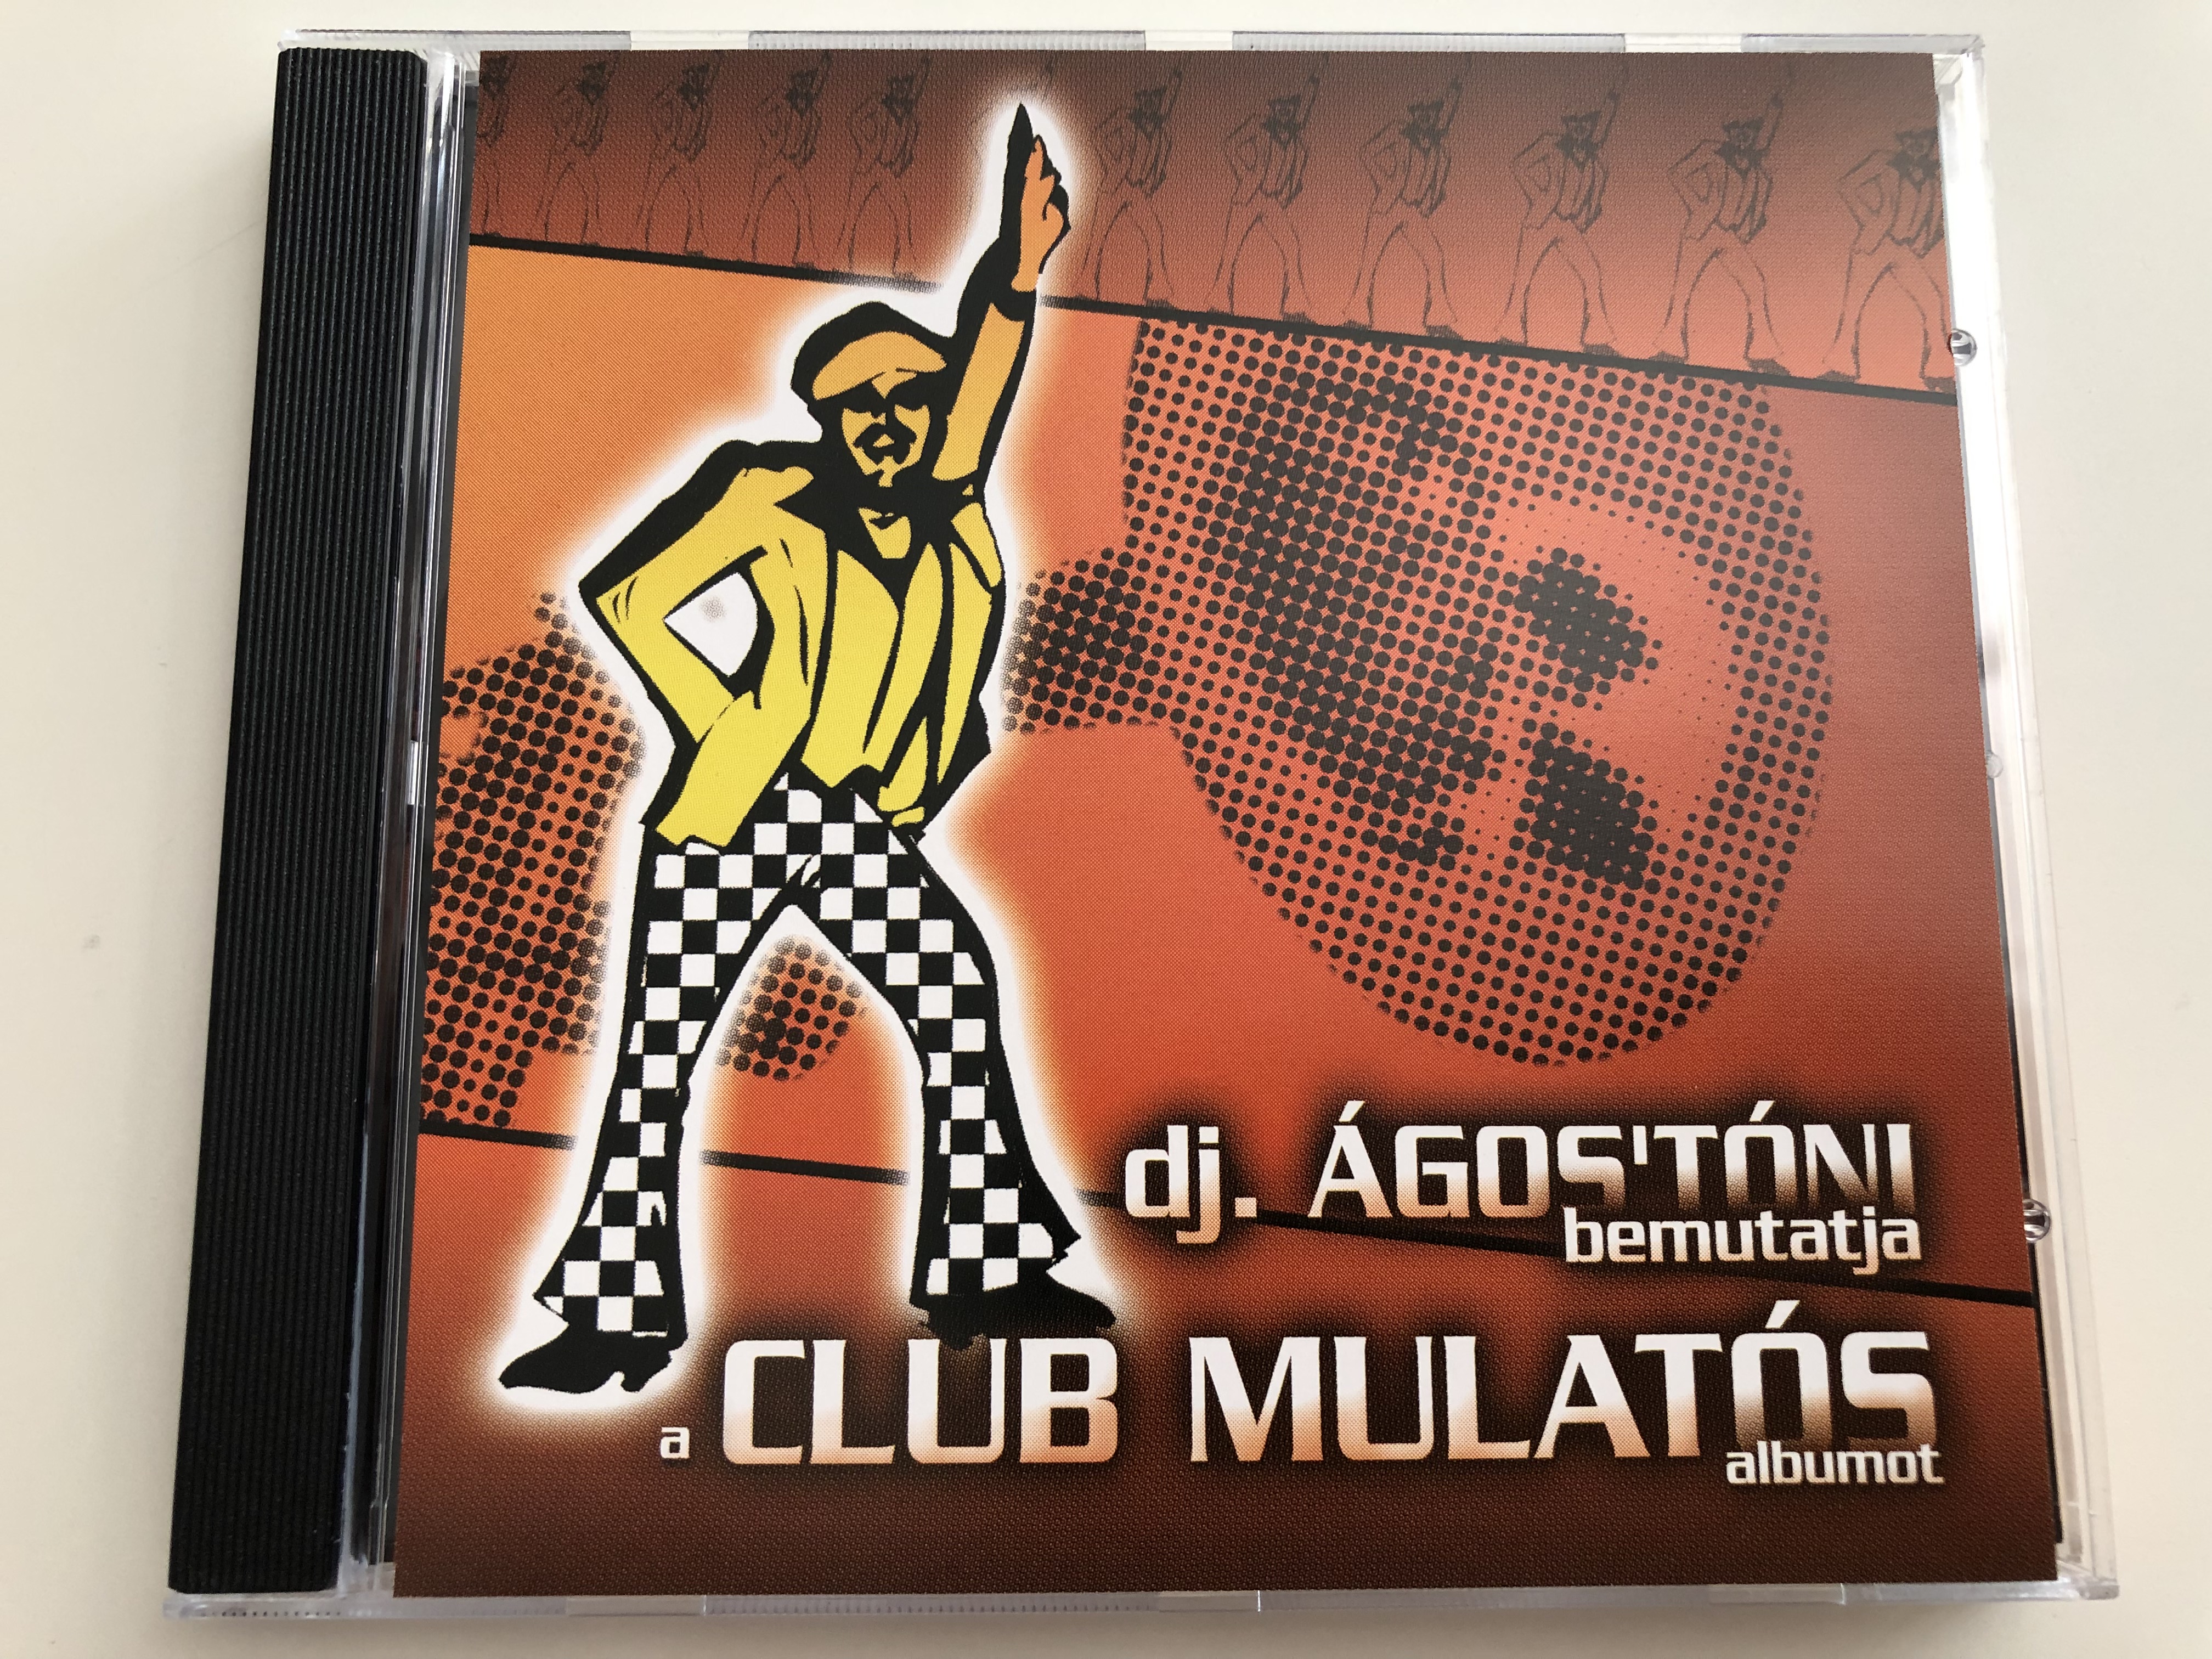 dj.-gos-t-ni-bemutatja-a-club-mulat-s-albumot-audio-cd-2005-emi-pmr-3469132-1-.jpg